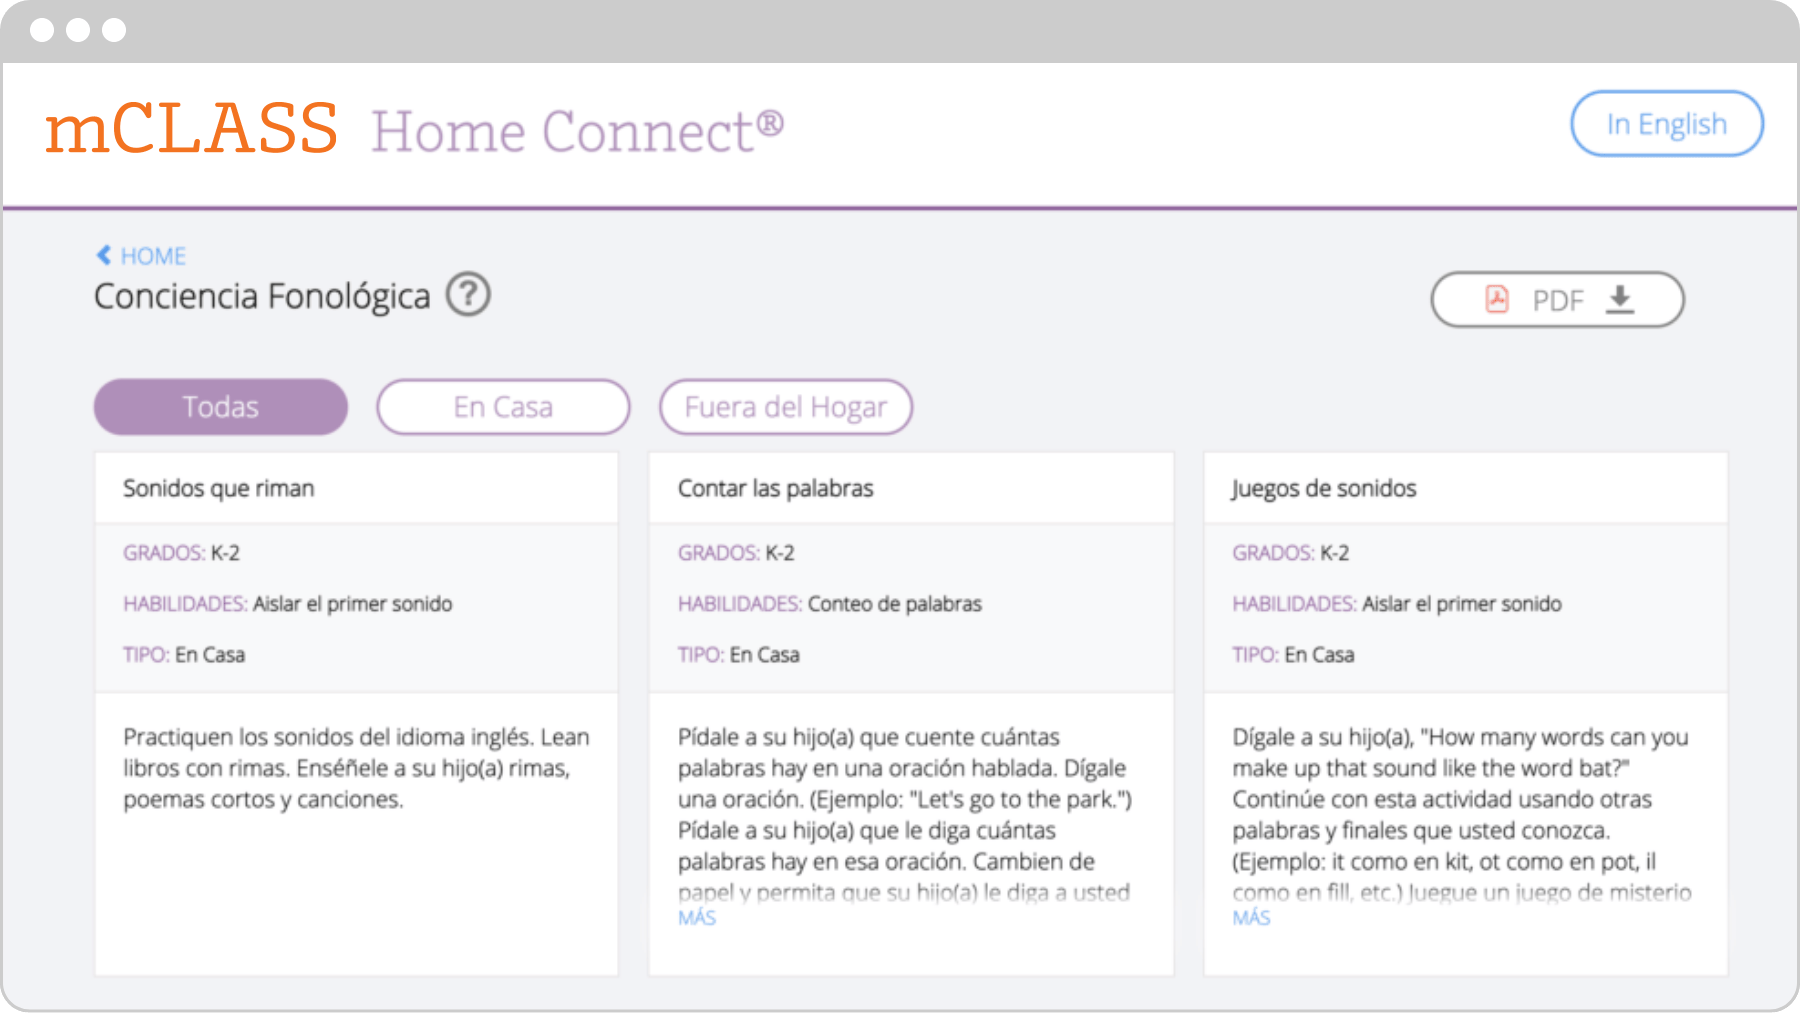 Captura de pantalla del sitio web mclass home connect en español, que muestra tres columnas denominadas 